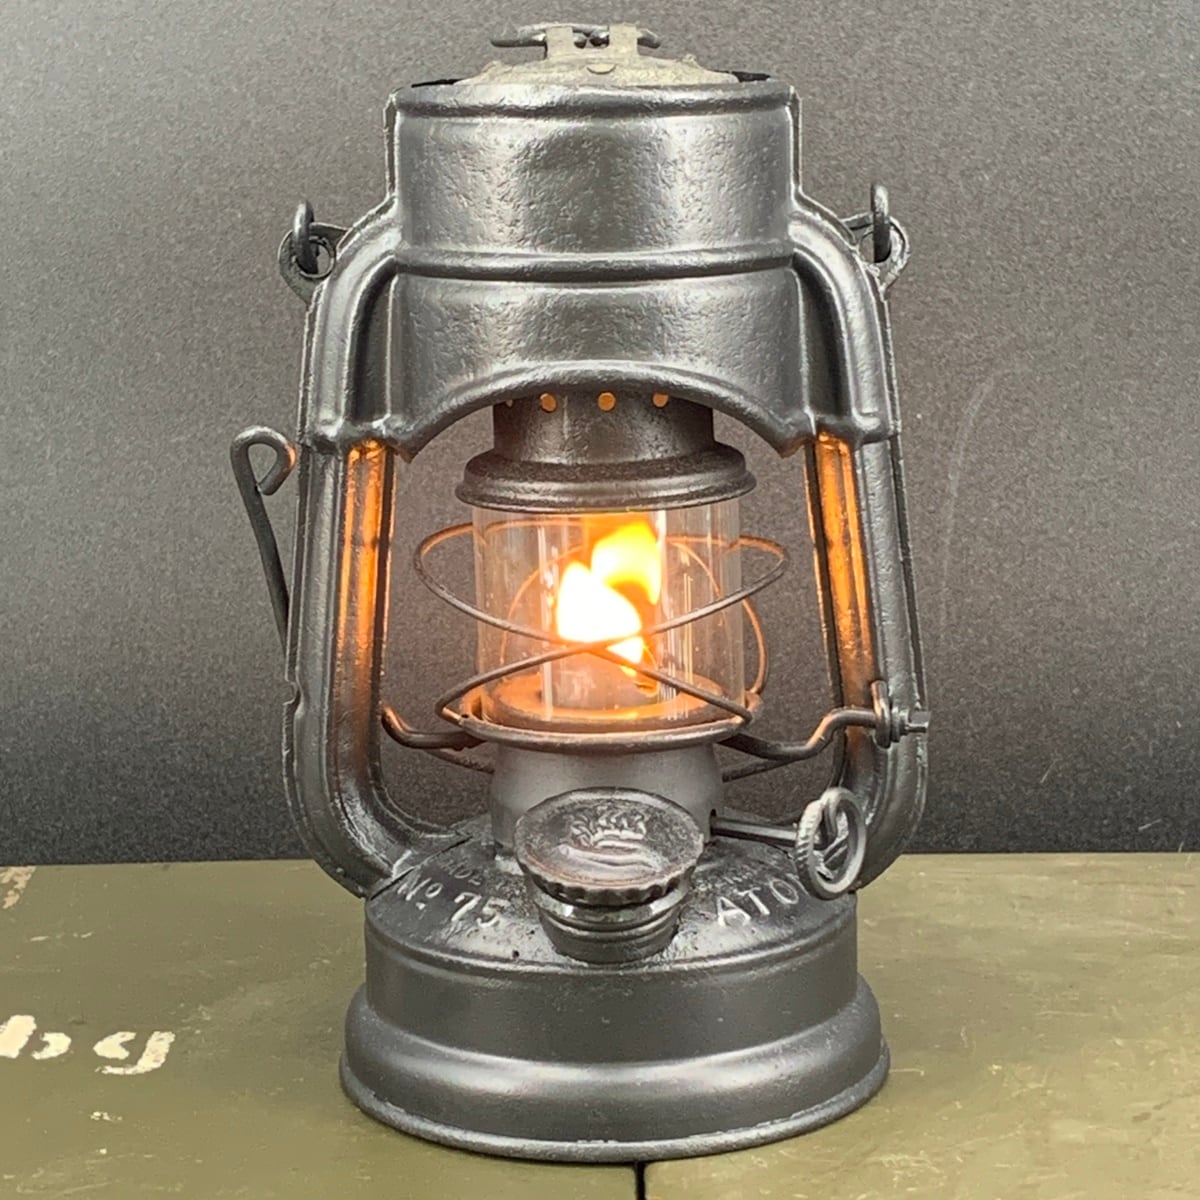 FEUERHAND 75 ATOM STK シリンダー ガラス | Oldman’s lantern powered by BASE